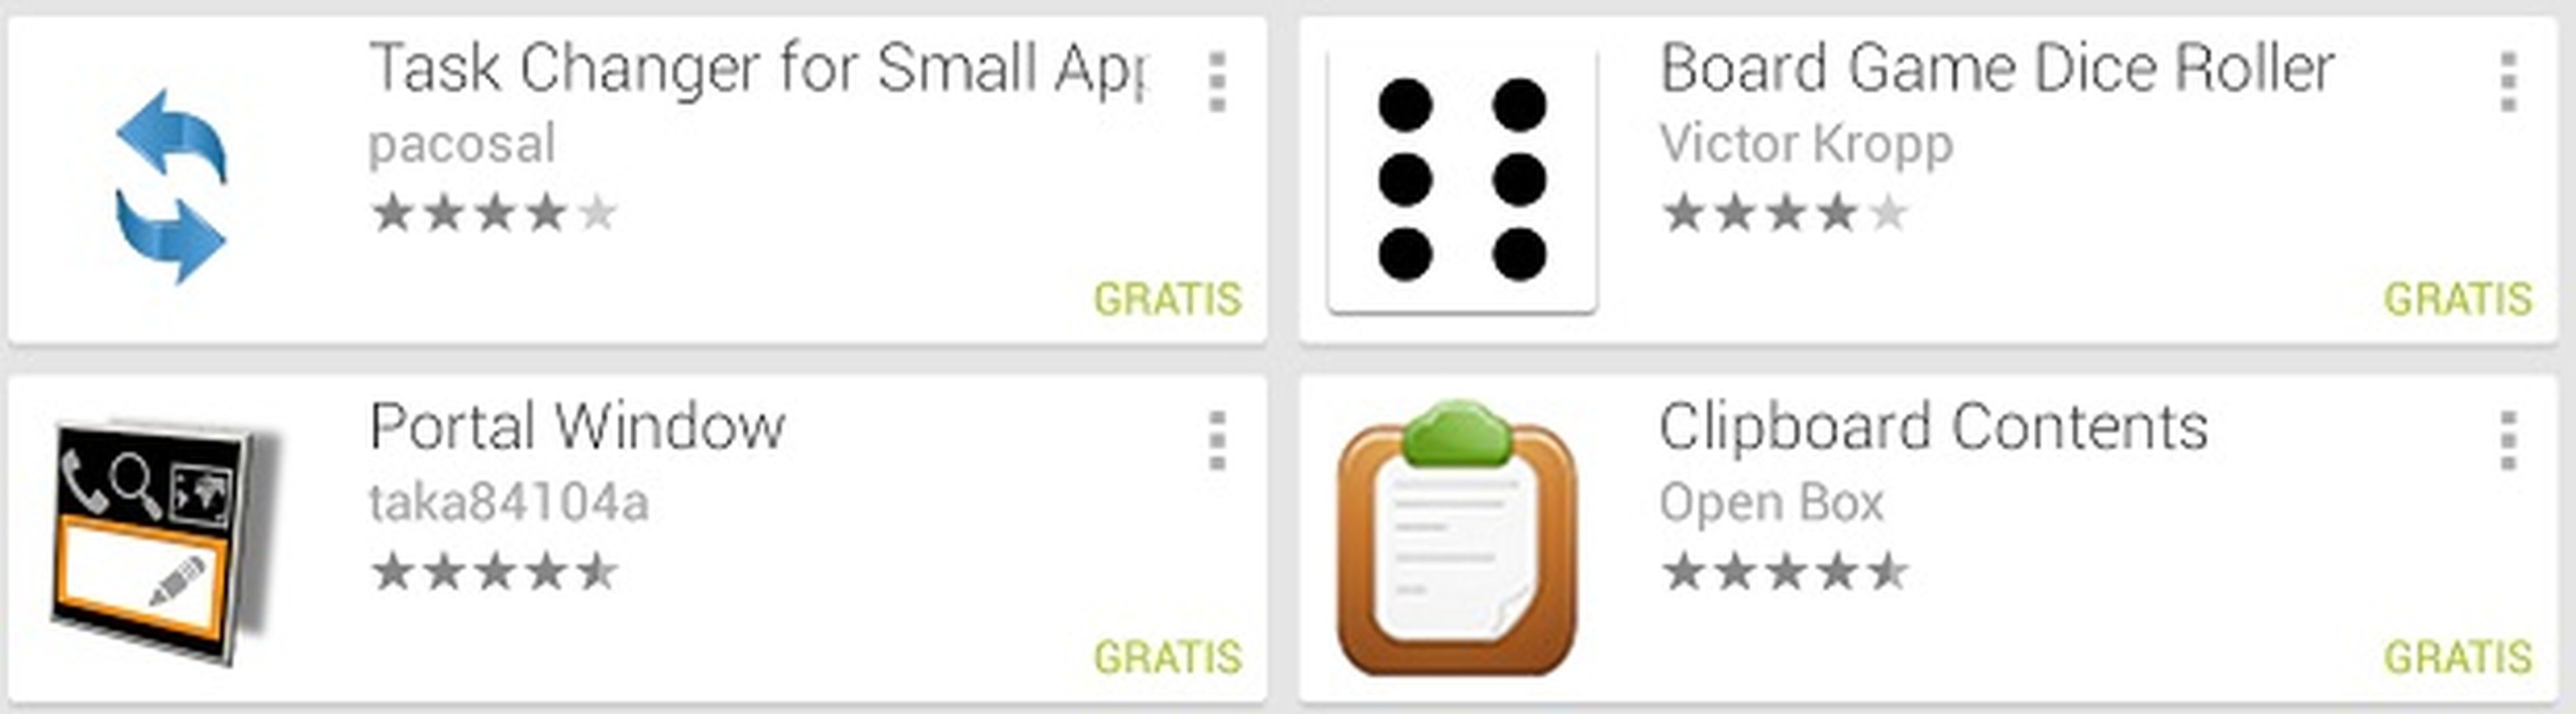 En Google Play hay cada vez más small apps disponibles